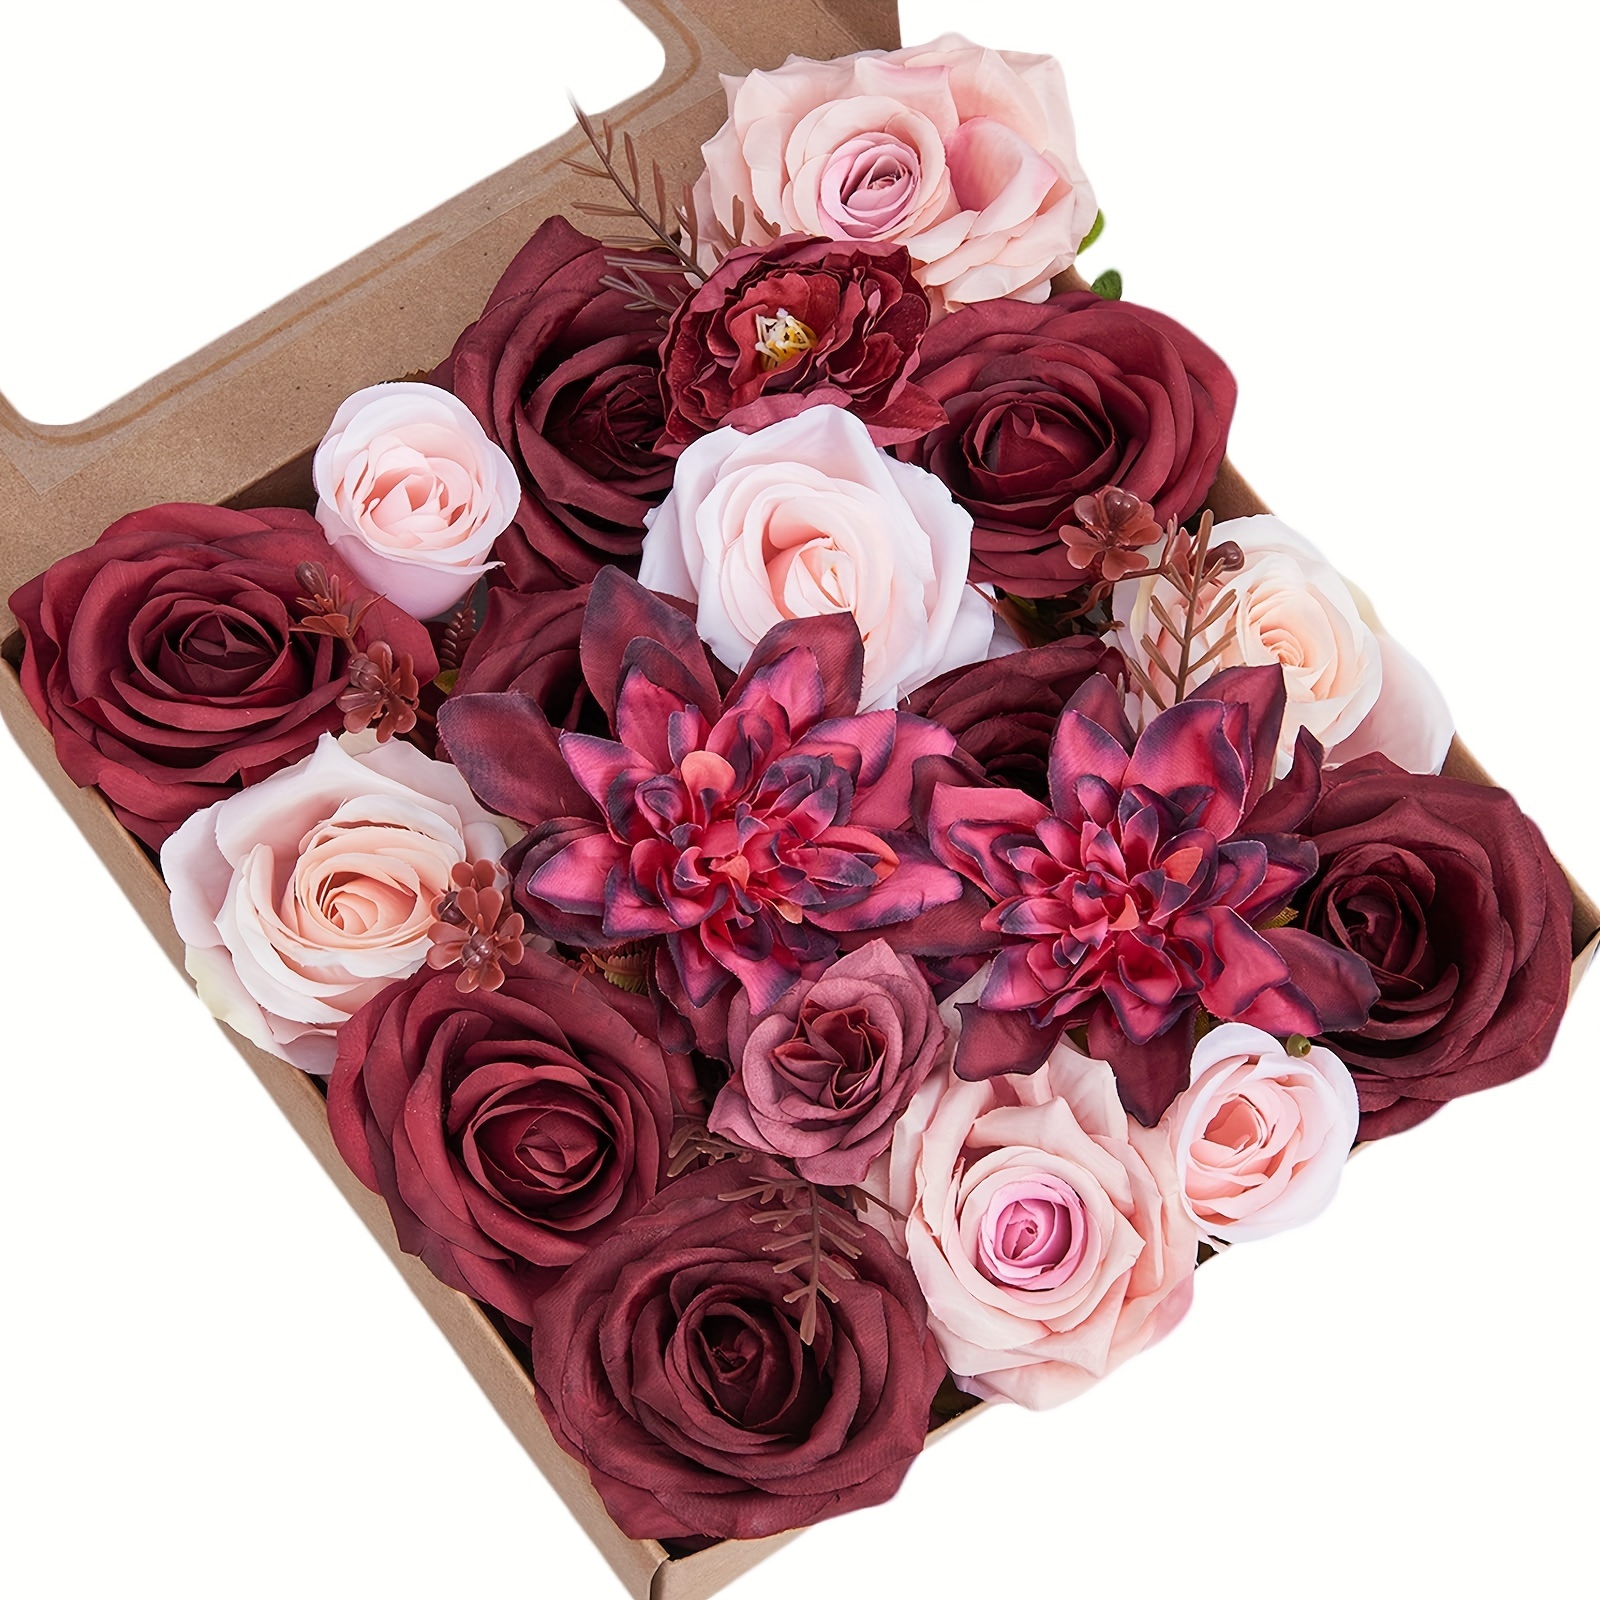 300 pétalos de rosa de seda artificiales rosas para boda, cesta de flores,  centros de mesa, recuerdos de fiesta, decoración romántica de noche, color